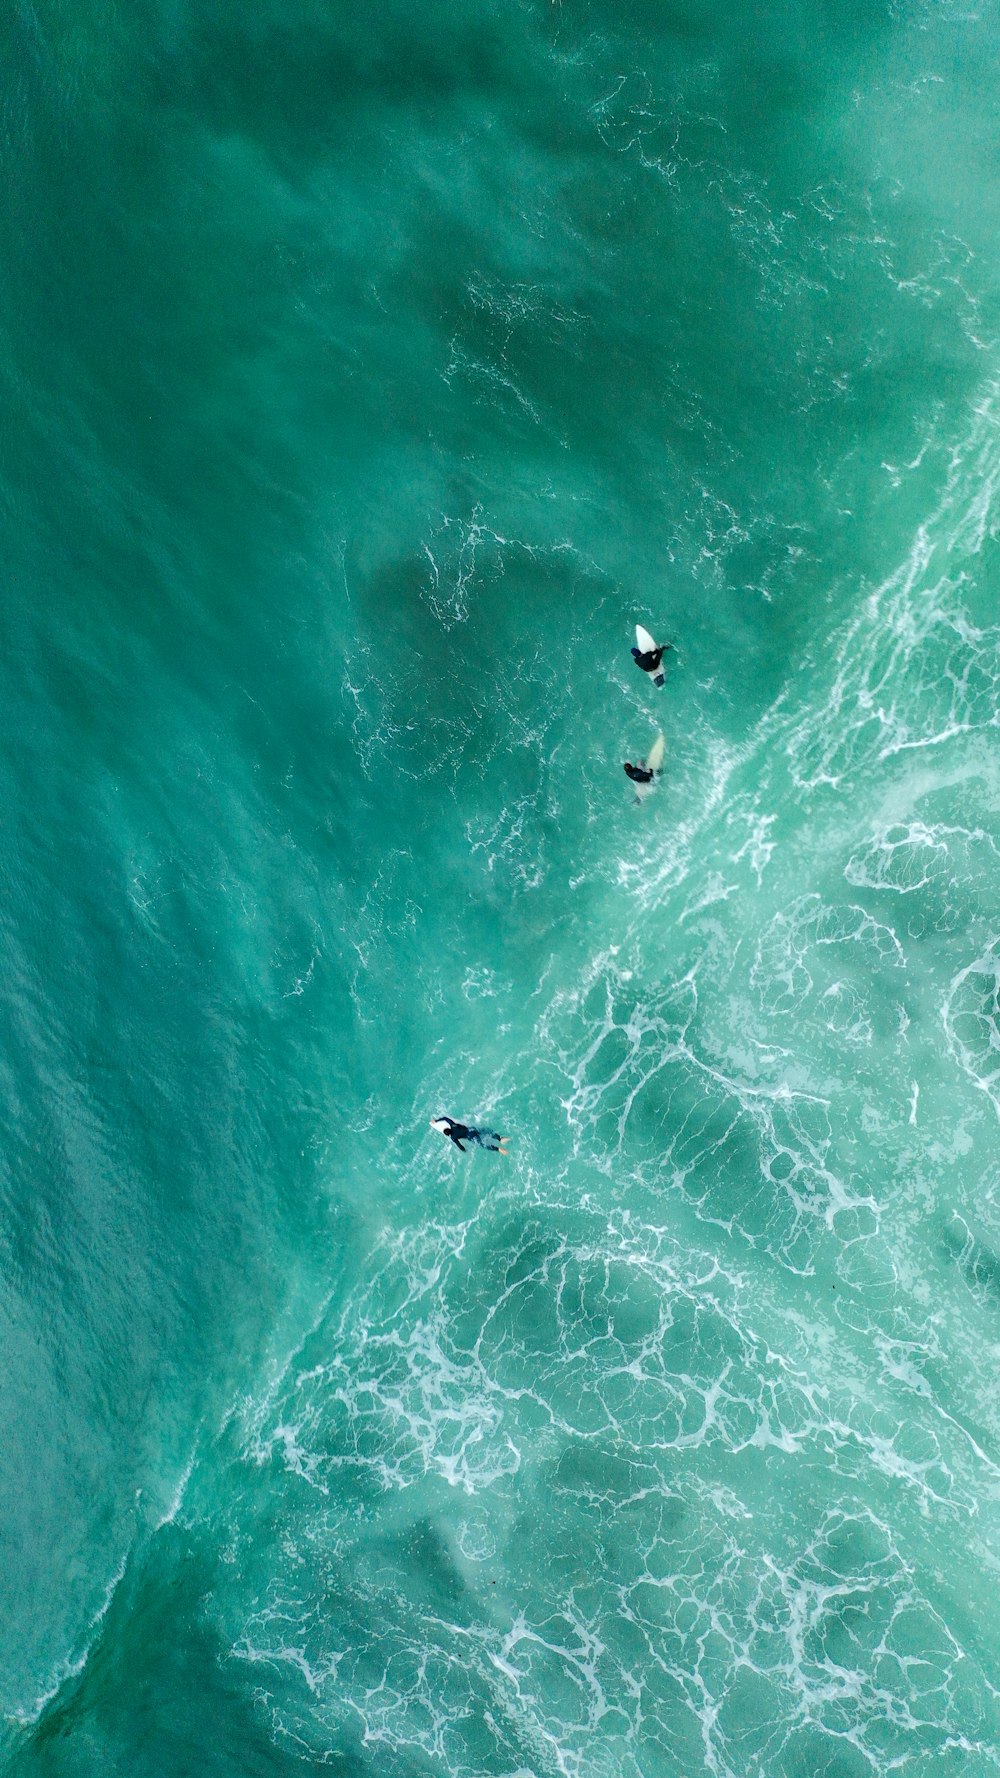 Fotografia aerea di surfisti in mare